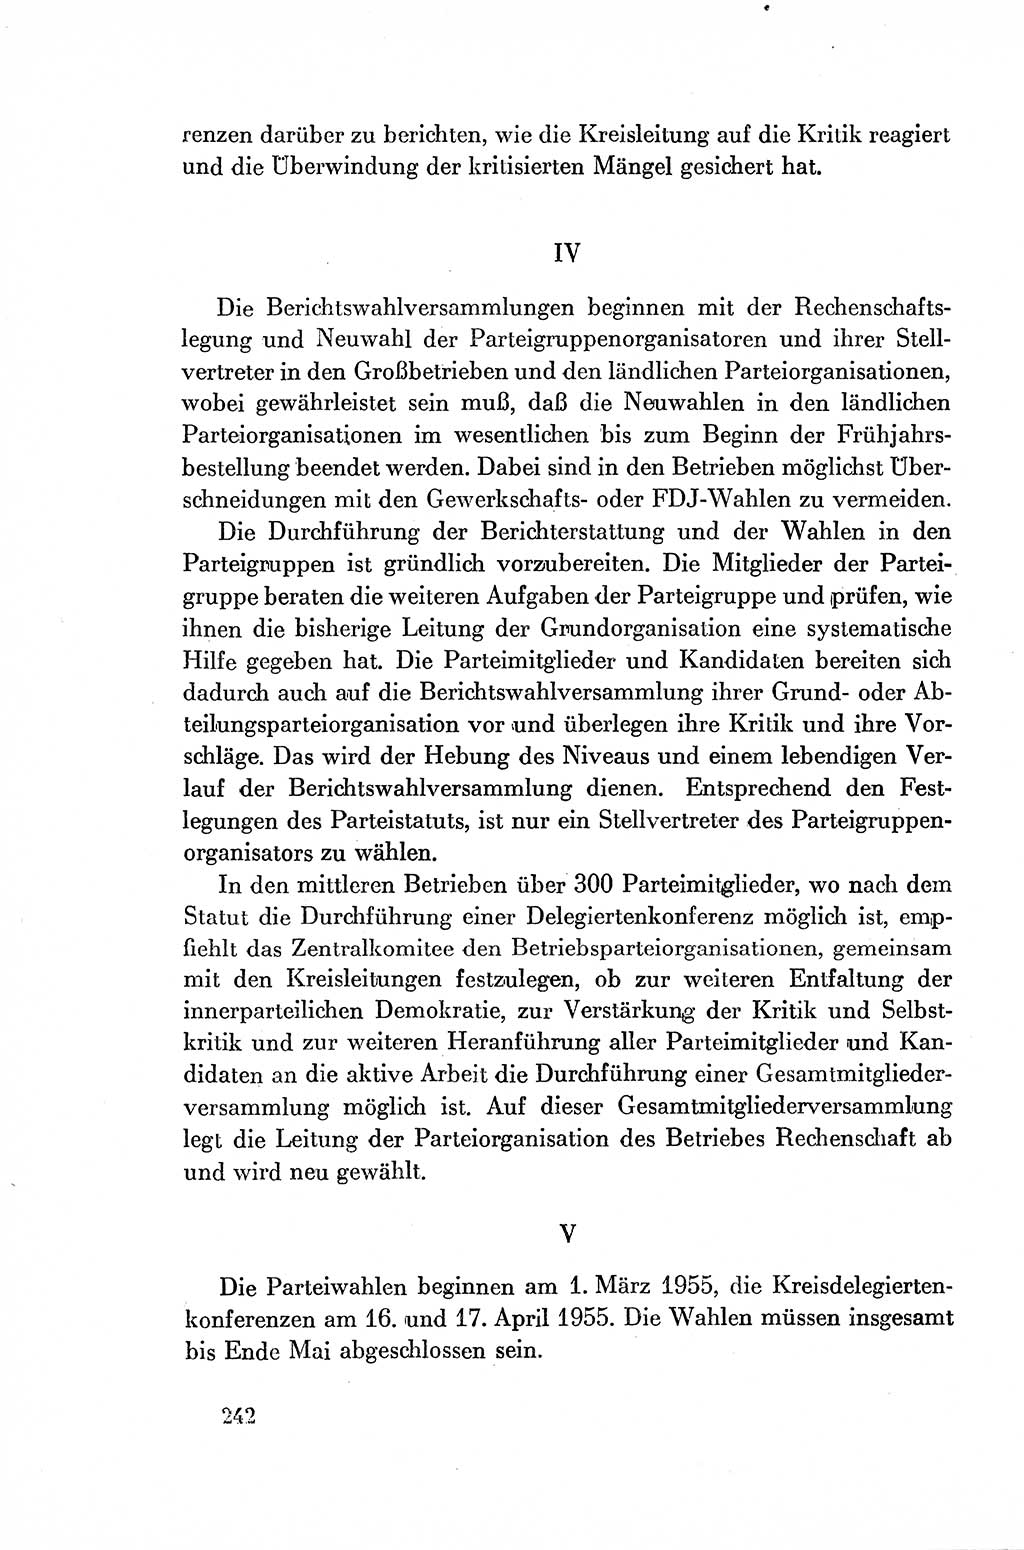 Dokumente der Sozialistischen Einheitspartei Deutschlands (SED) [Deutsche Demokratische Republik (DDR)] 1954-1955, Seite 242 (Dok. SED DDR 1954-1955, S. 242)